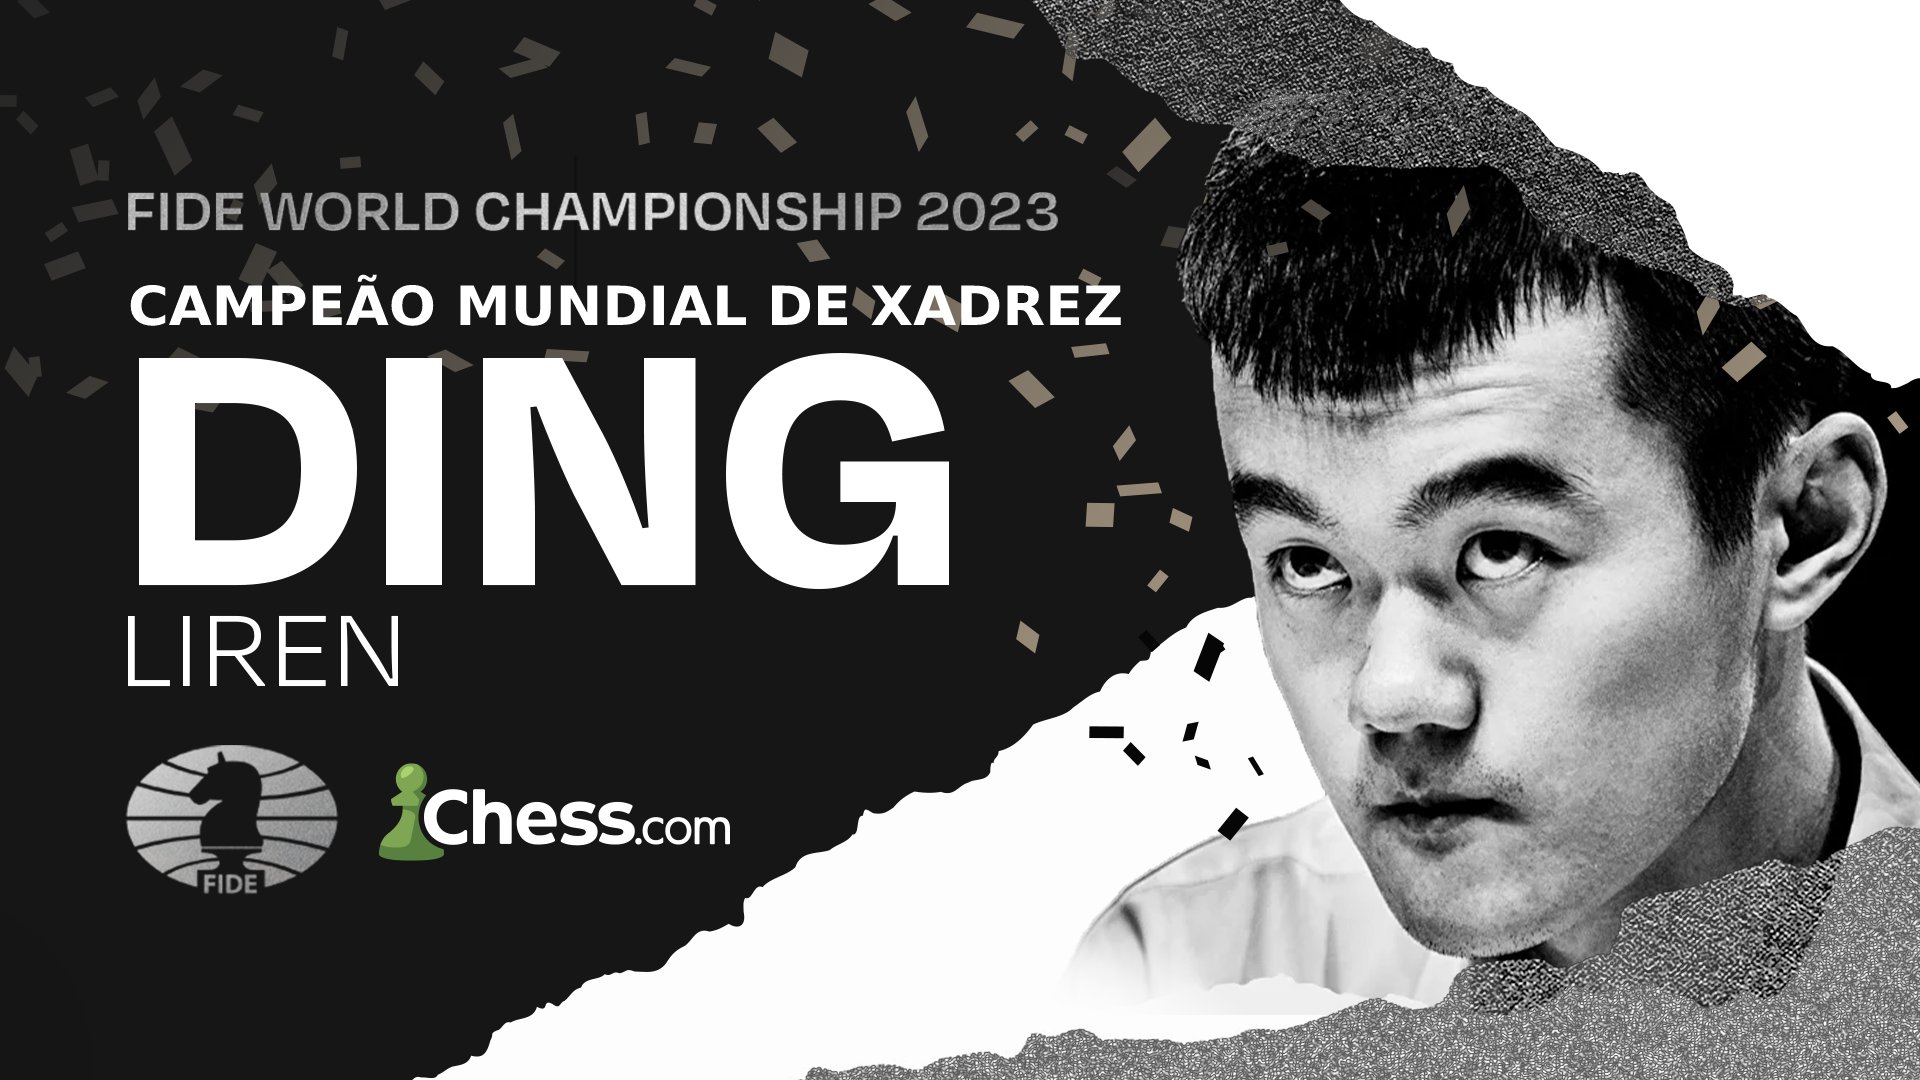 Chess.com Português on X: Com um começo ruim no Campeonato Mundial de  Xadrez, o Dragão Chinês DEU A VOLTA POR CIMA, se estabilizou e É O CAMPEÃO  MUNDIAL DE XADREZ! O nome